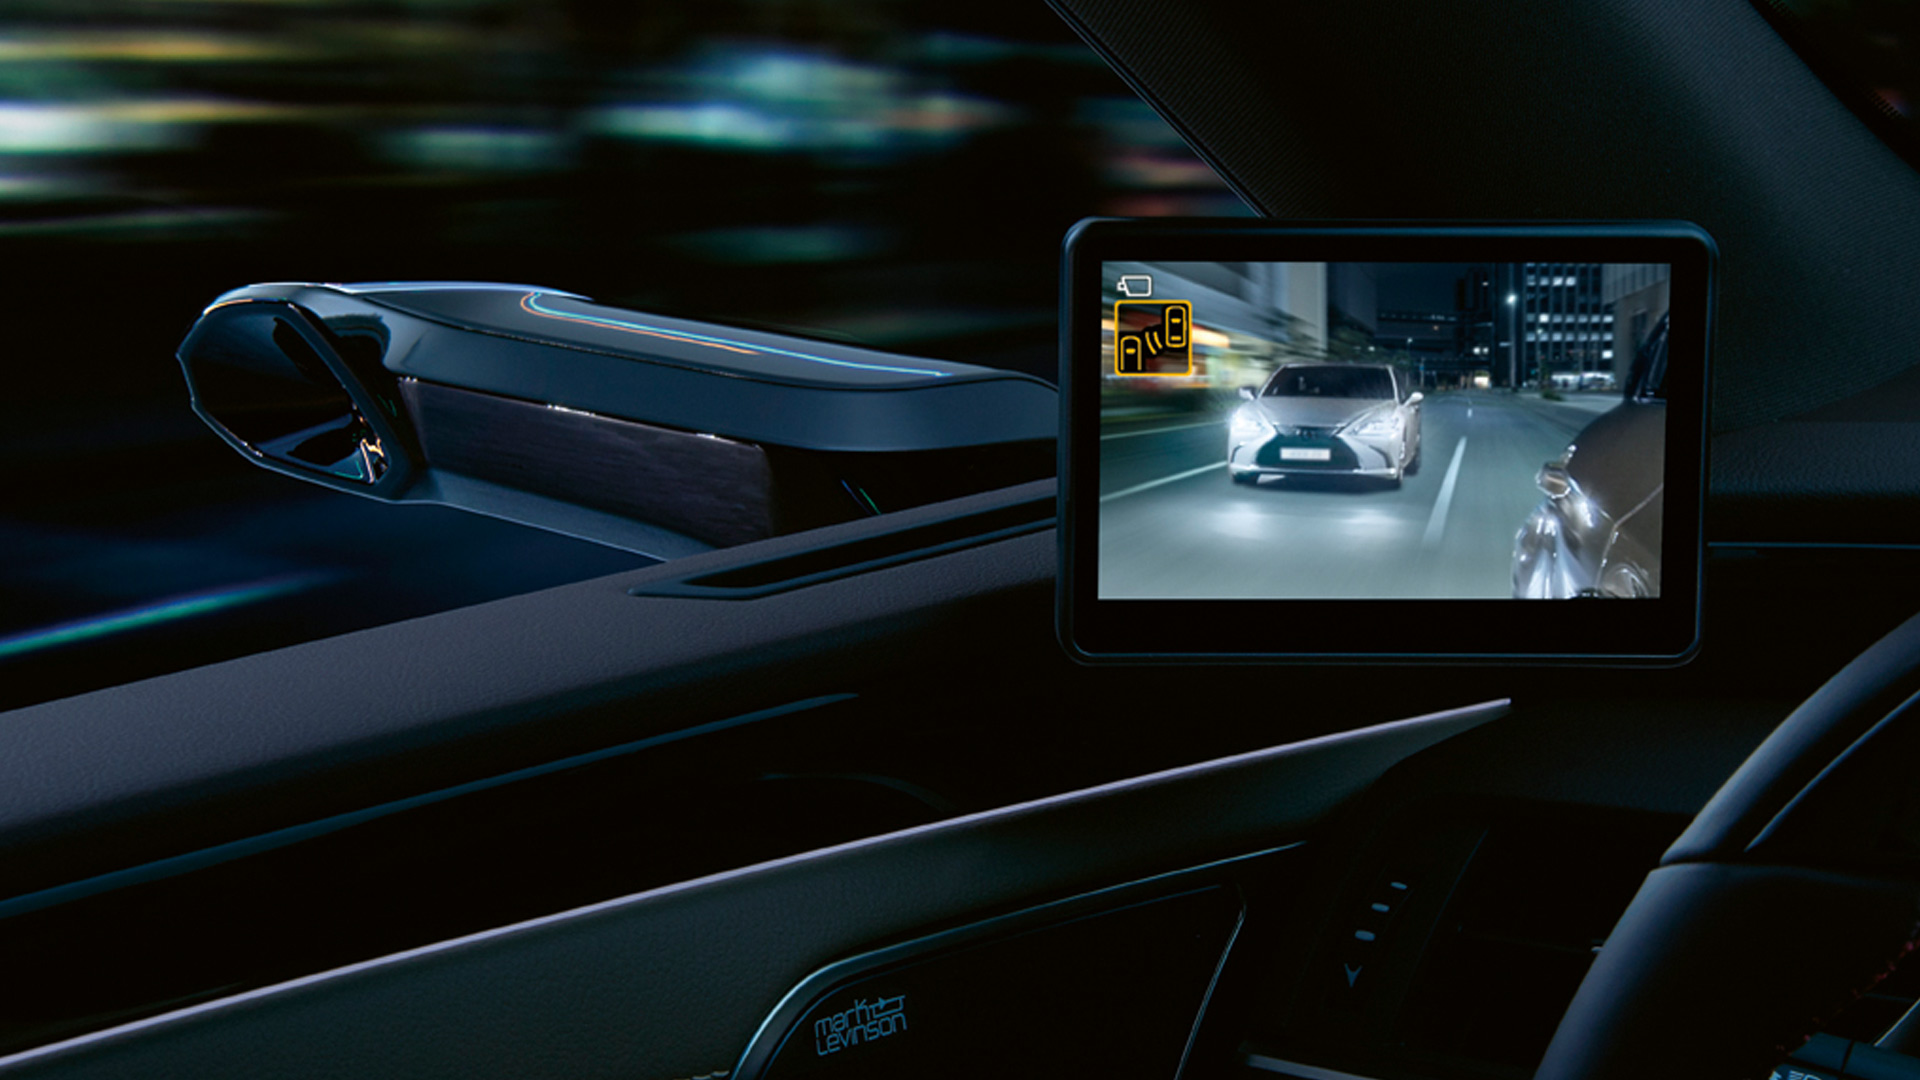 Seitenspiegel kameraaufnahmen im inneren des Autos mithilfe eines Bildschirms bei Nacht